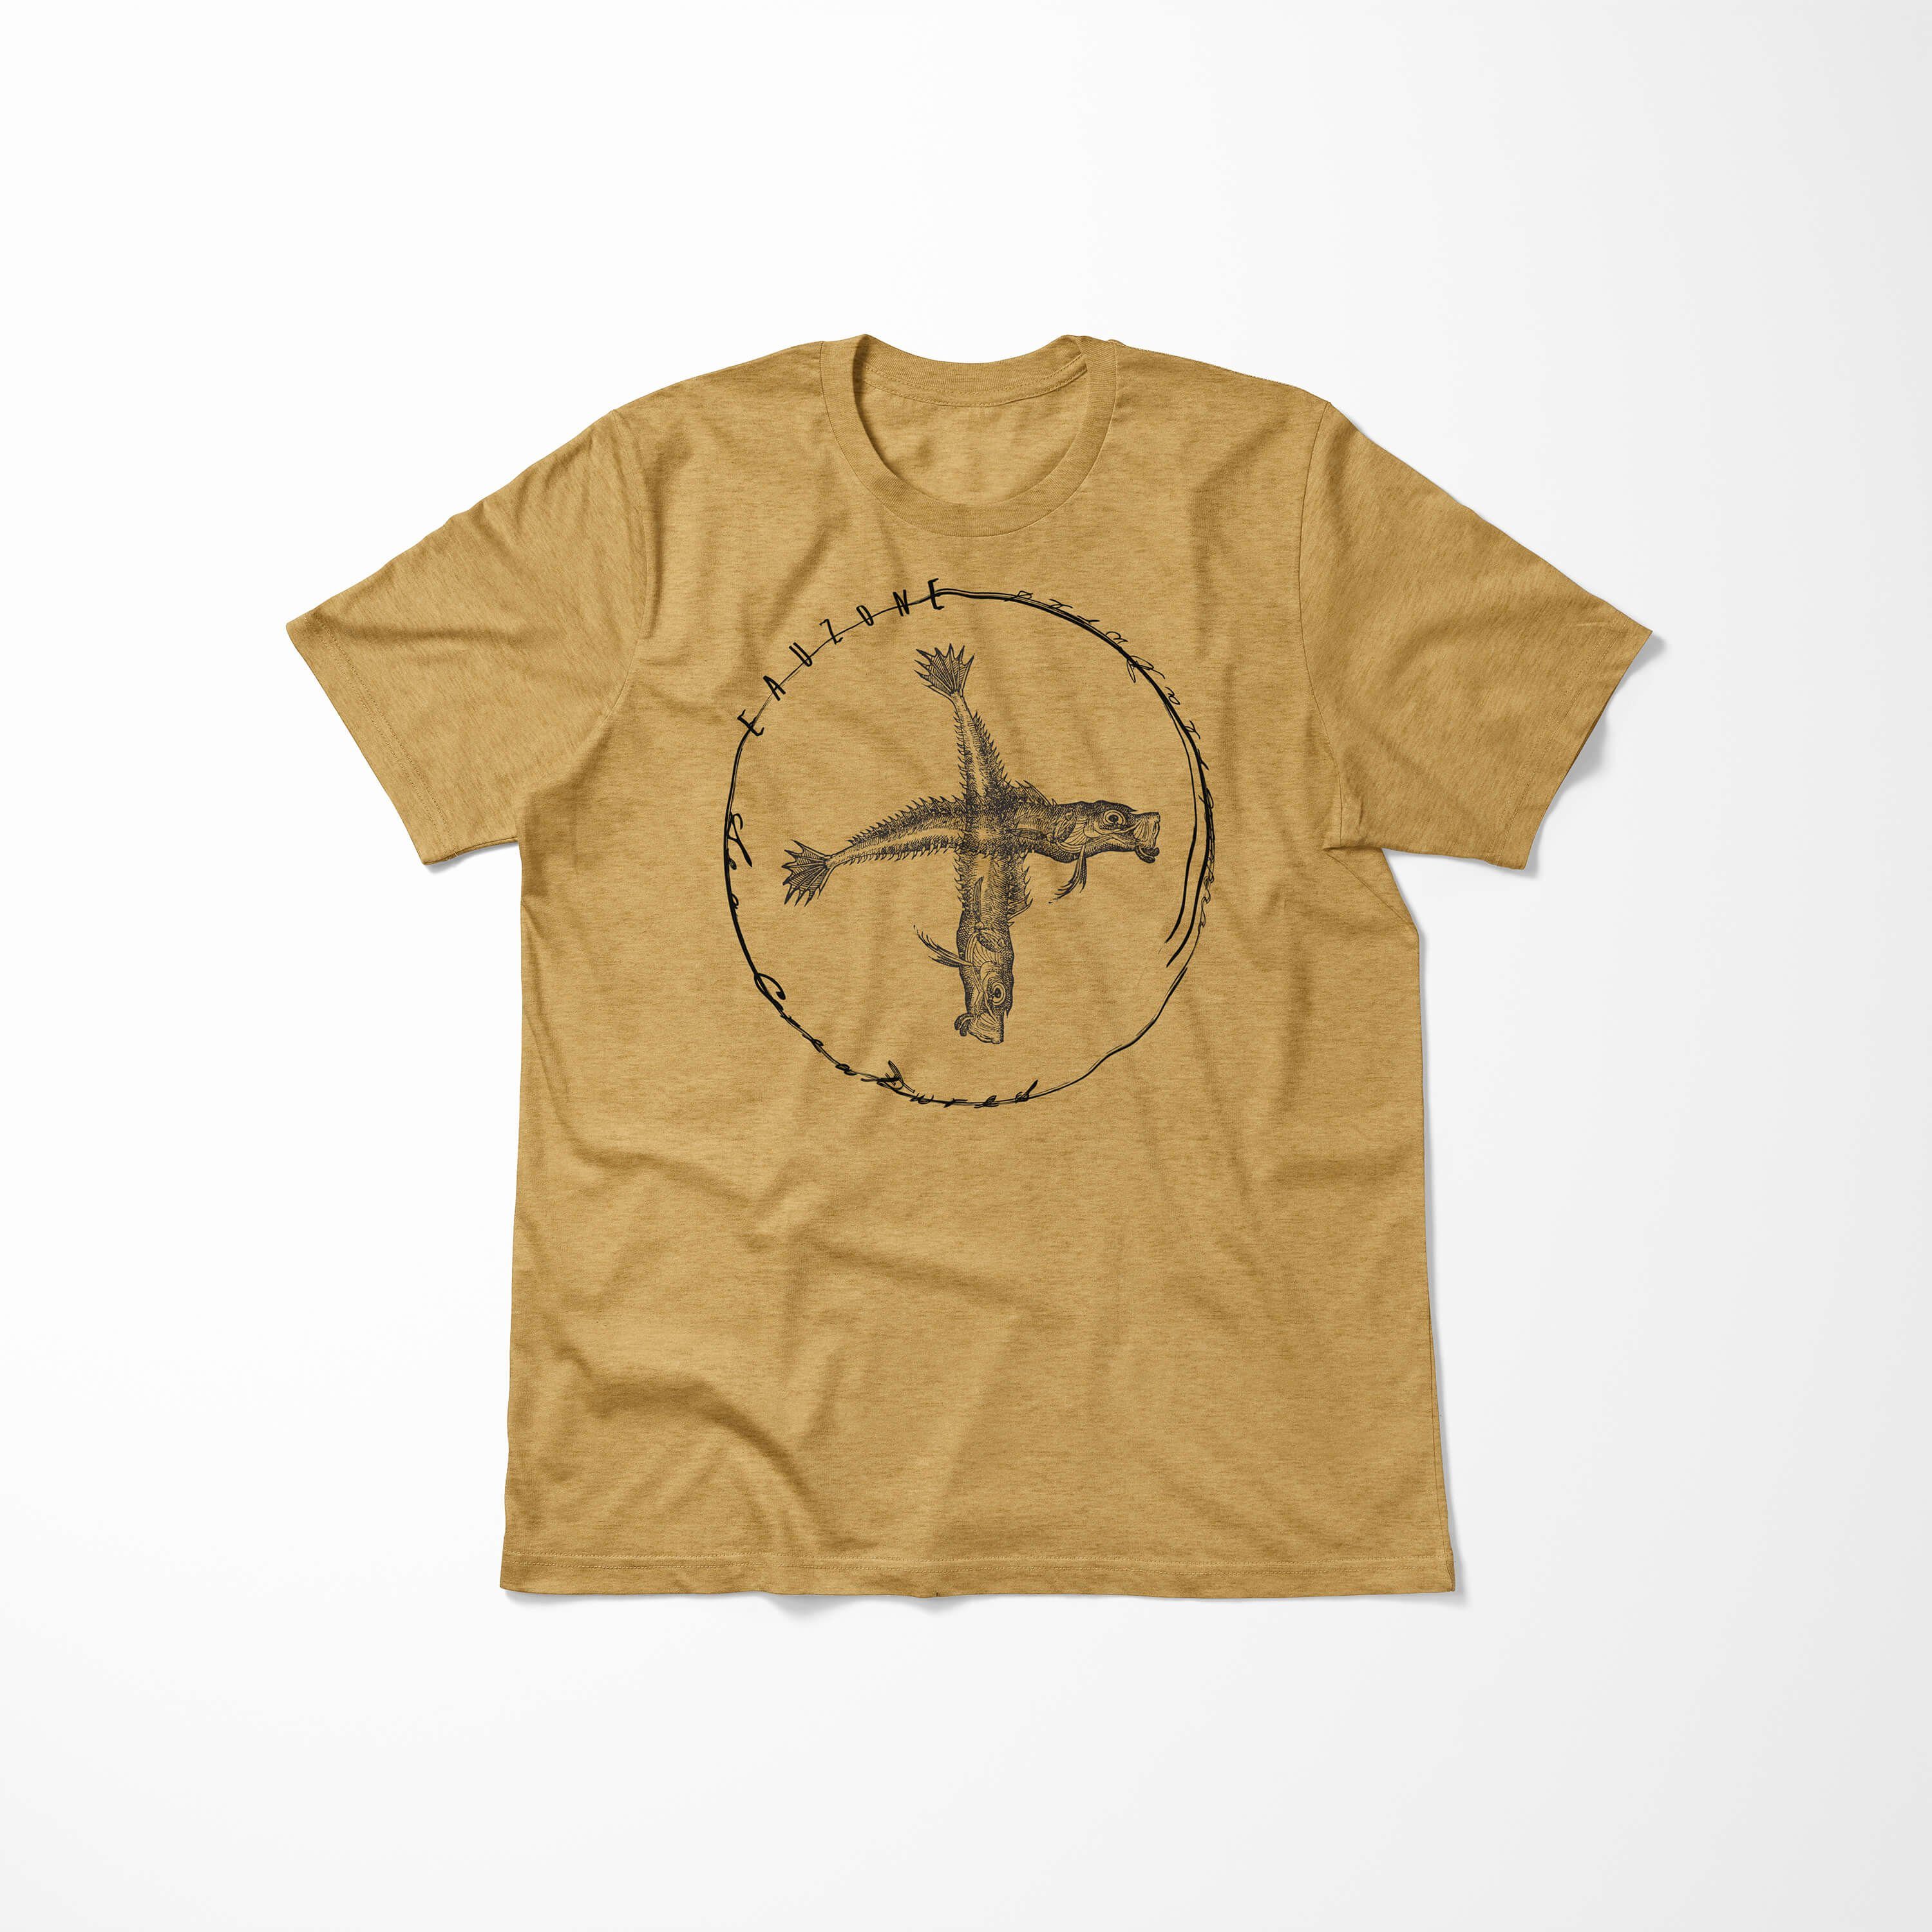 Tiefsee Schnitt - Struktur T-Shirt Creatures, Fische Sinus Art Sea T-Shirt feine 074 Sea Gold sportlicher Serie: und Antique /